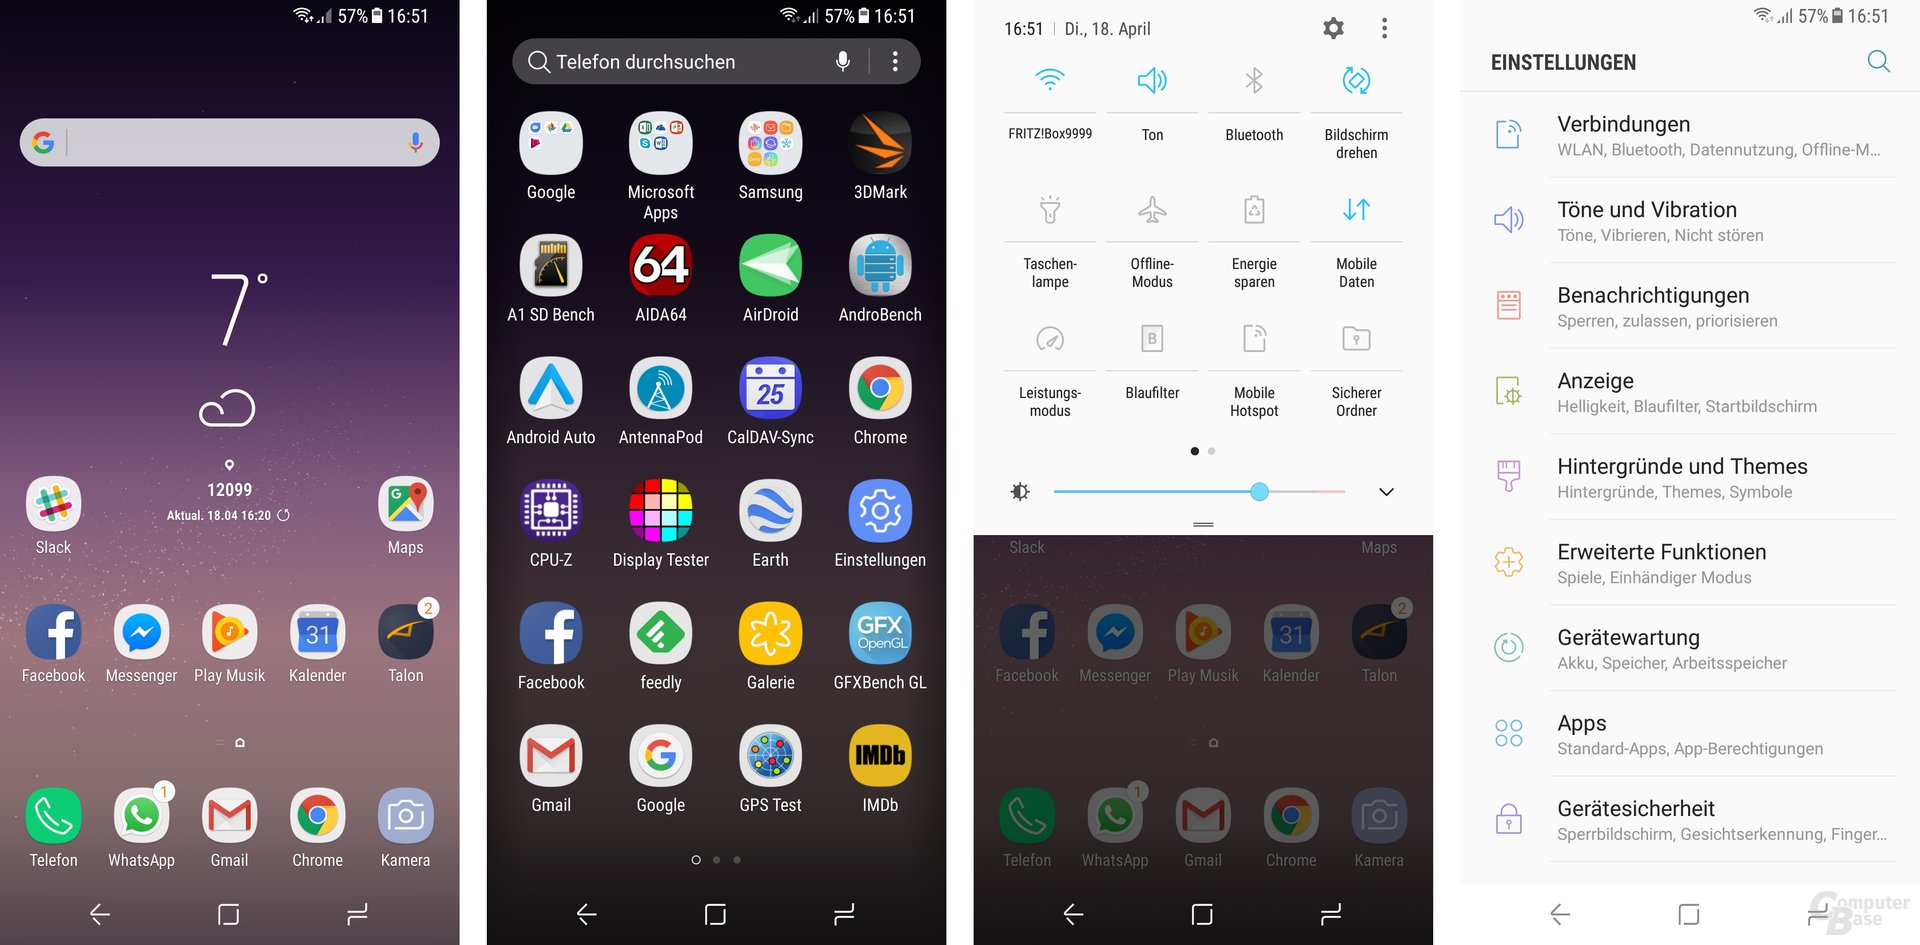 Android 7.0 mit April-Patch und leicht verändertem Design